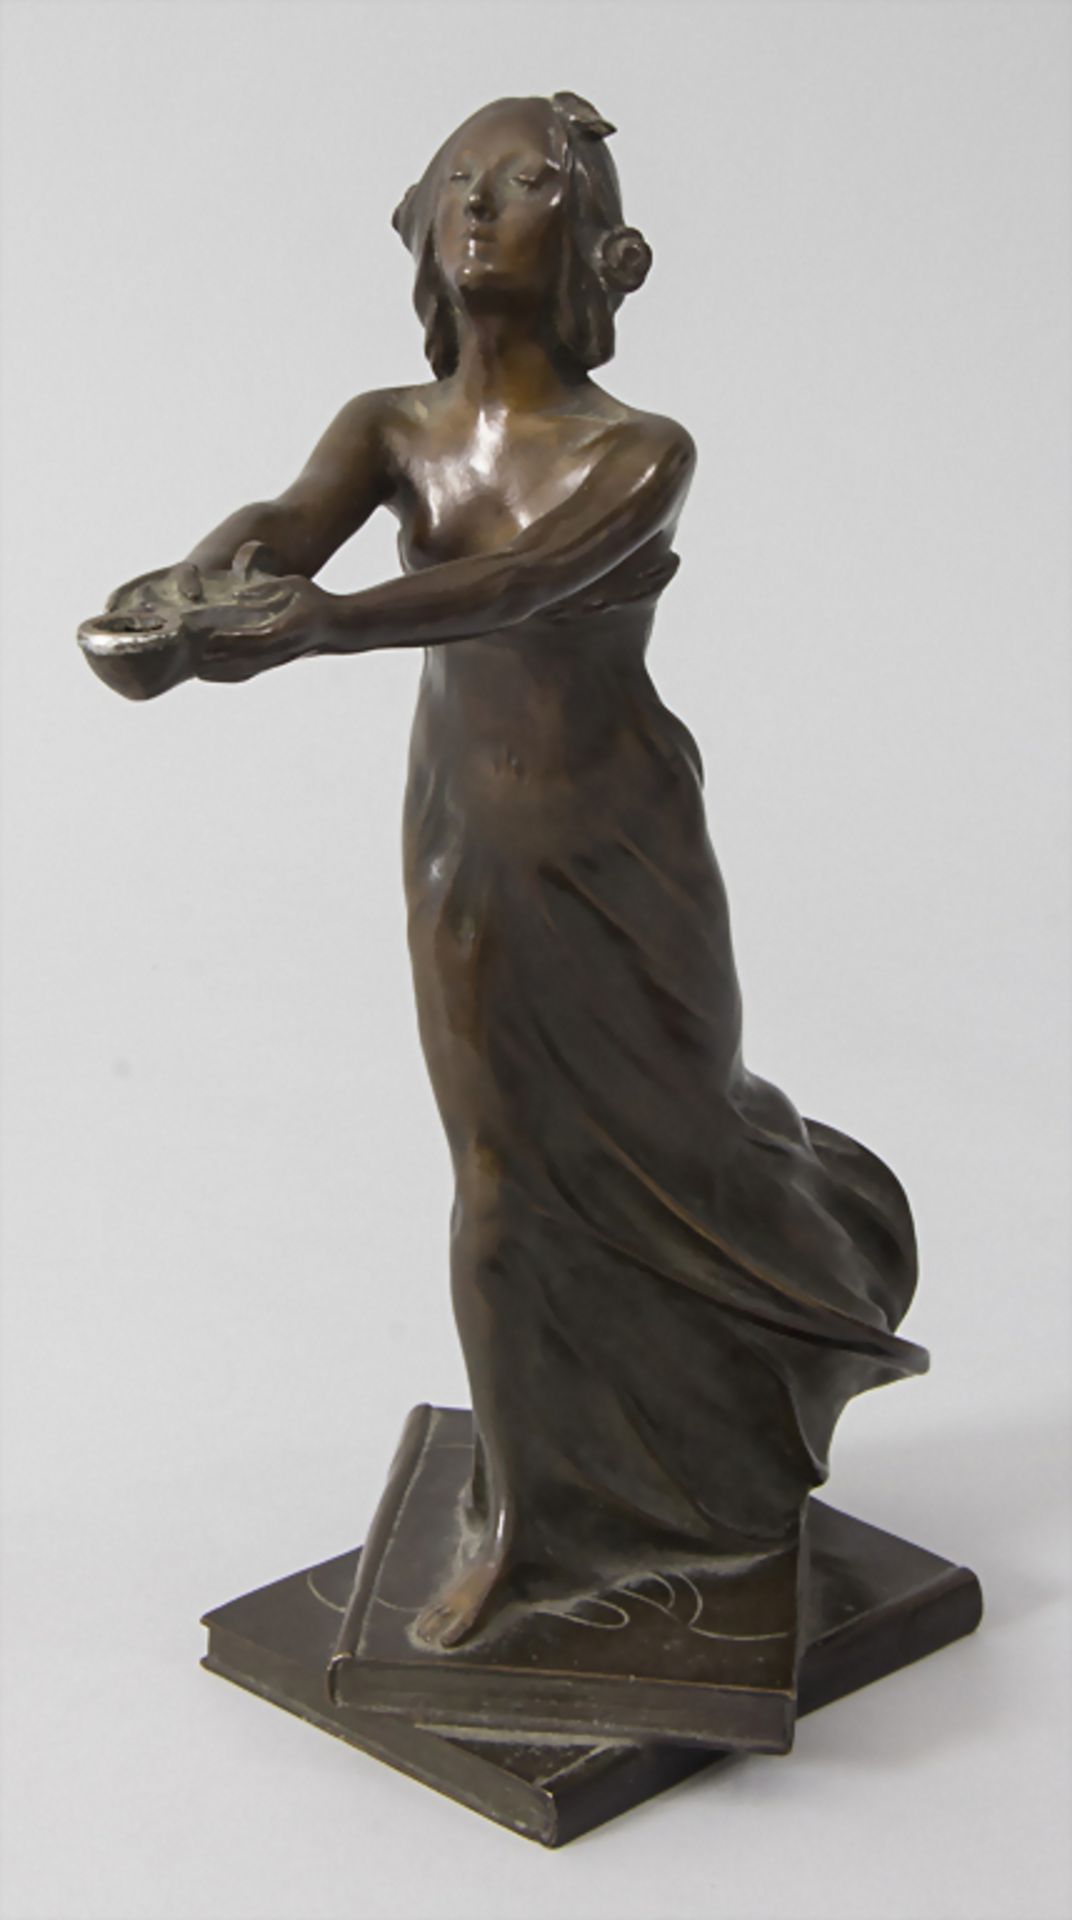 Jugendstil Bronze 'Mädchen mit Öllampe' / An Art Nouveau bronze of a young woman holding an oi